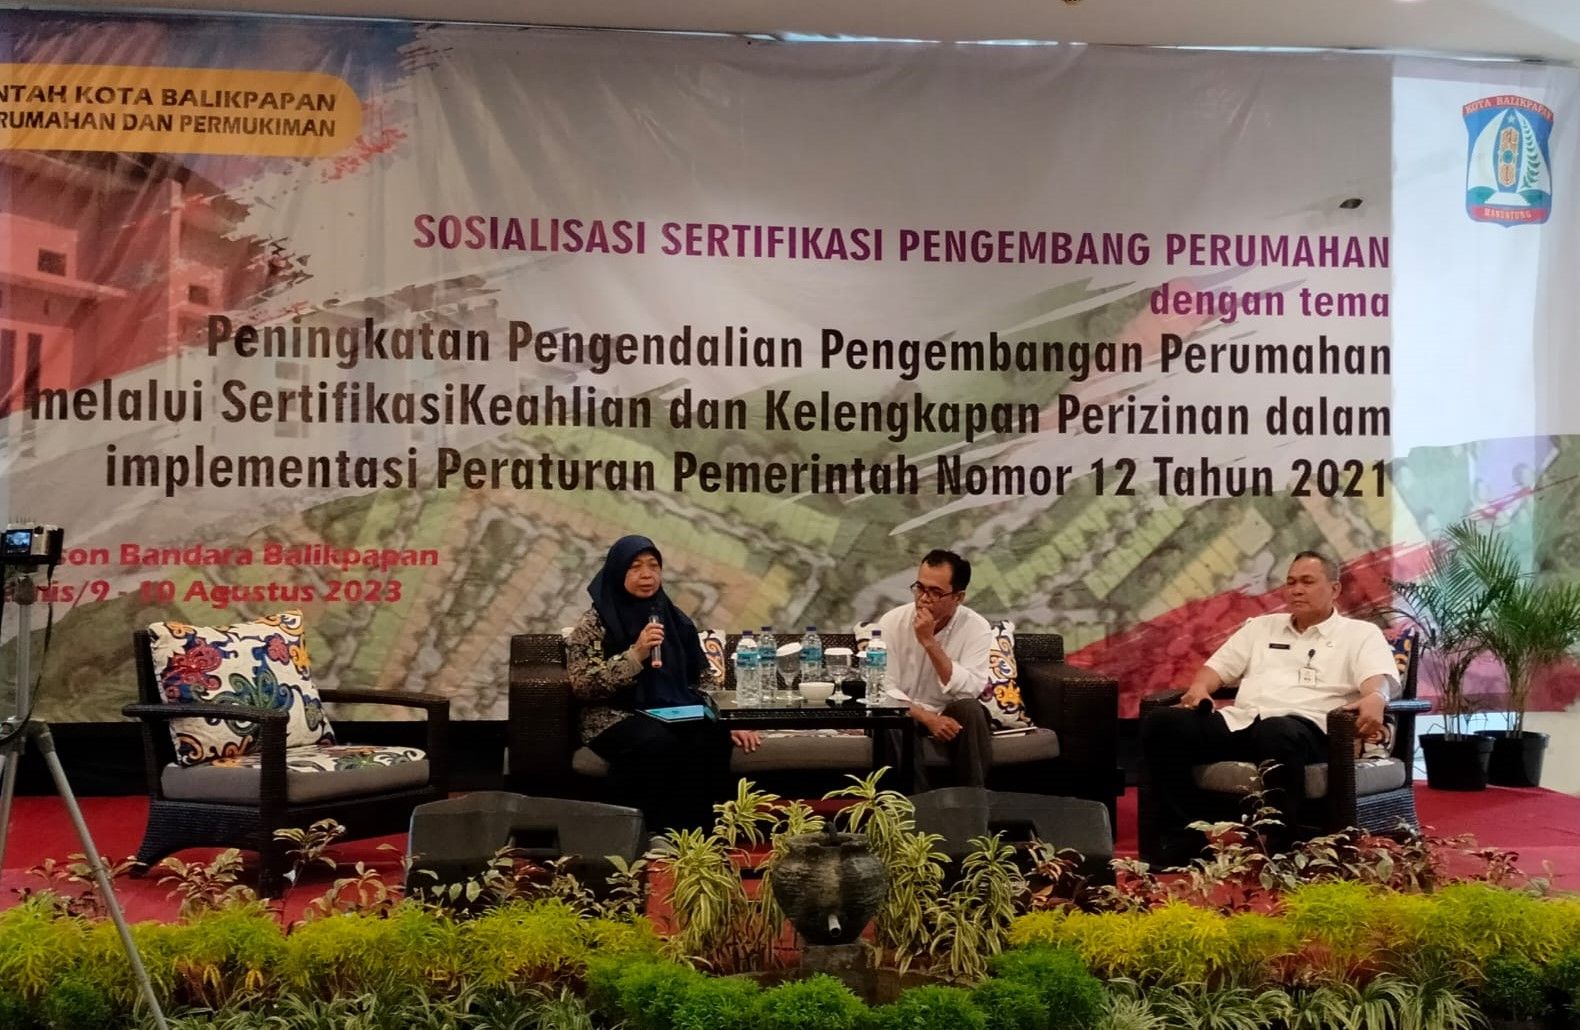 Wujudkan Hunian Layak, Pemkot Balikpapan Sosialisasi Sertifikasi Pengembang Perumahan, Rabu 9 Agustus 2023